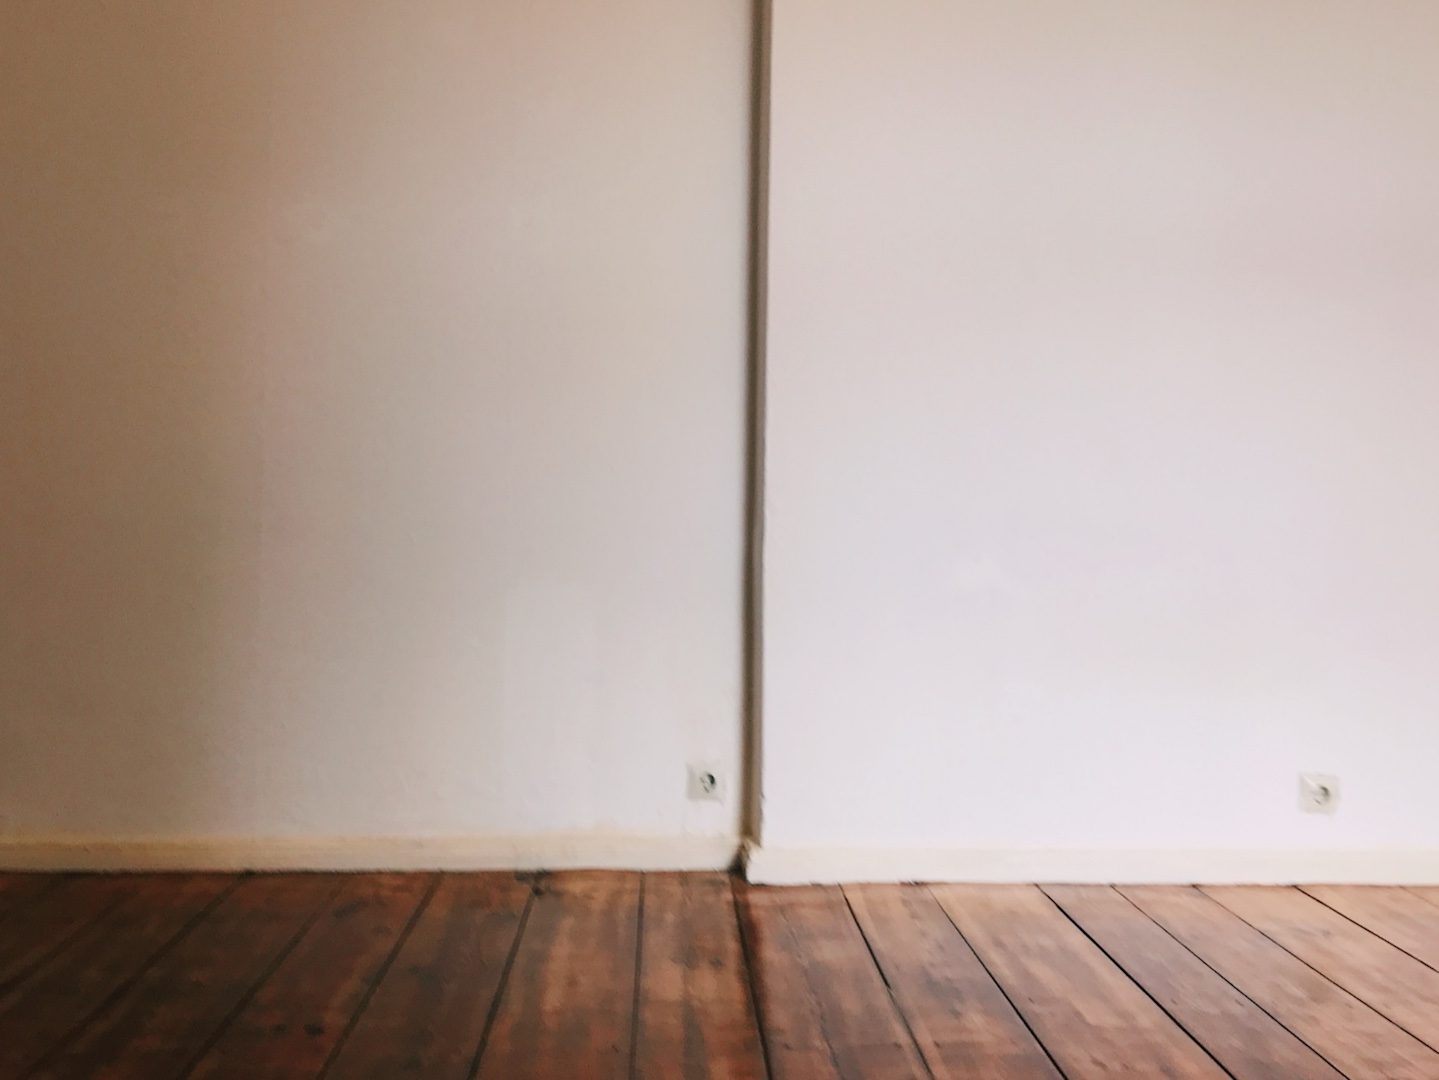 Neuanfang: Foto einer weißen Wand mit Holzboden in einer leeren Wohnung